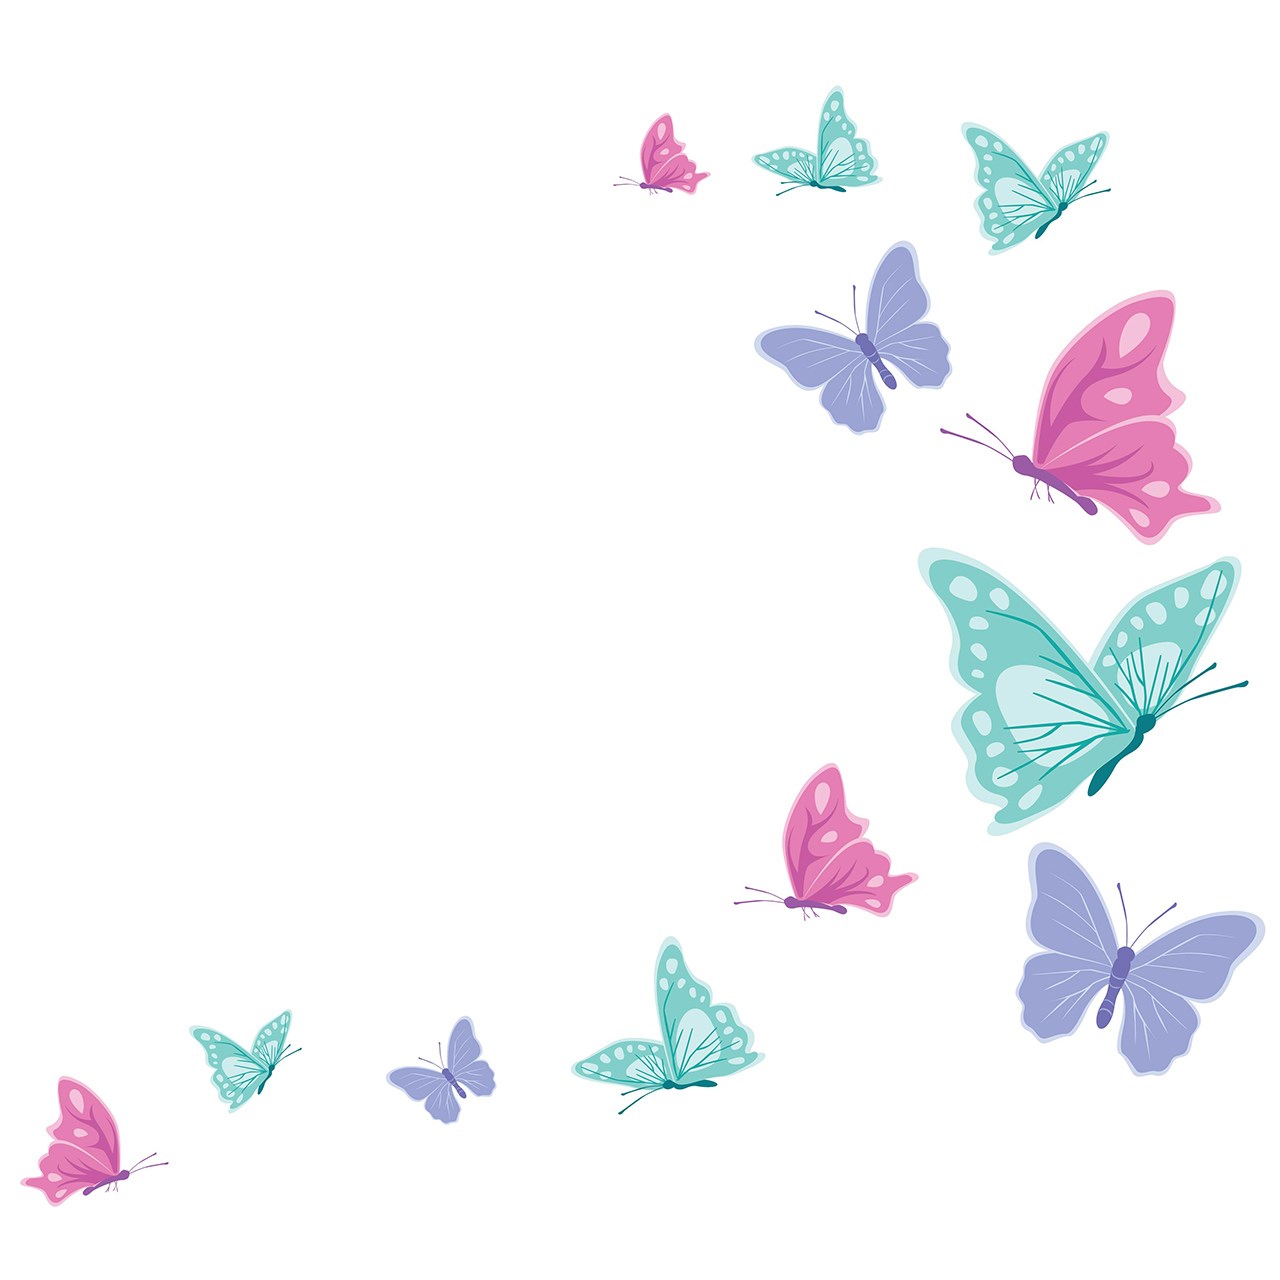 استیکر سالسو طرح پروانه های رنگی